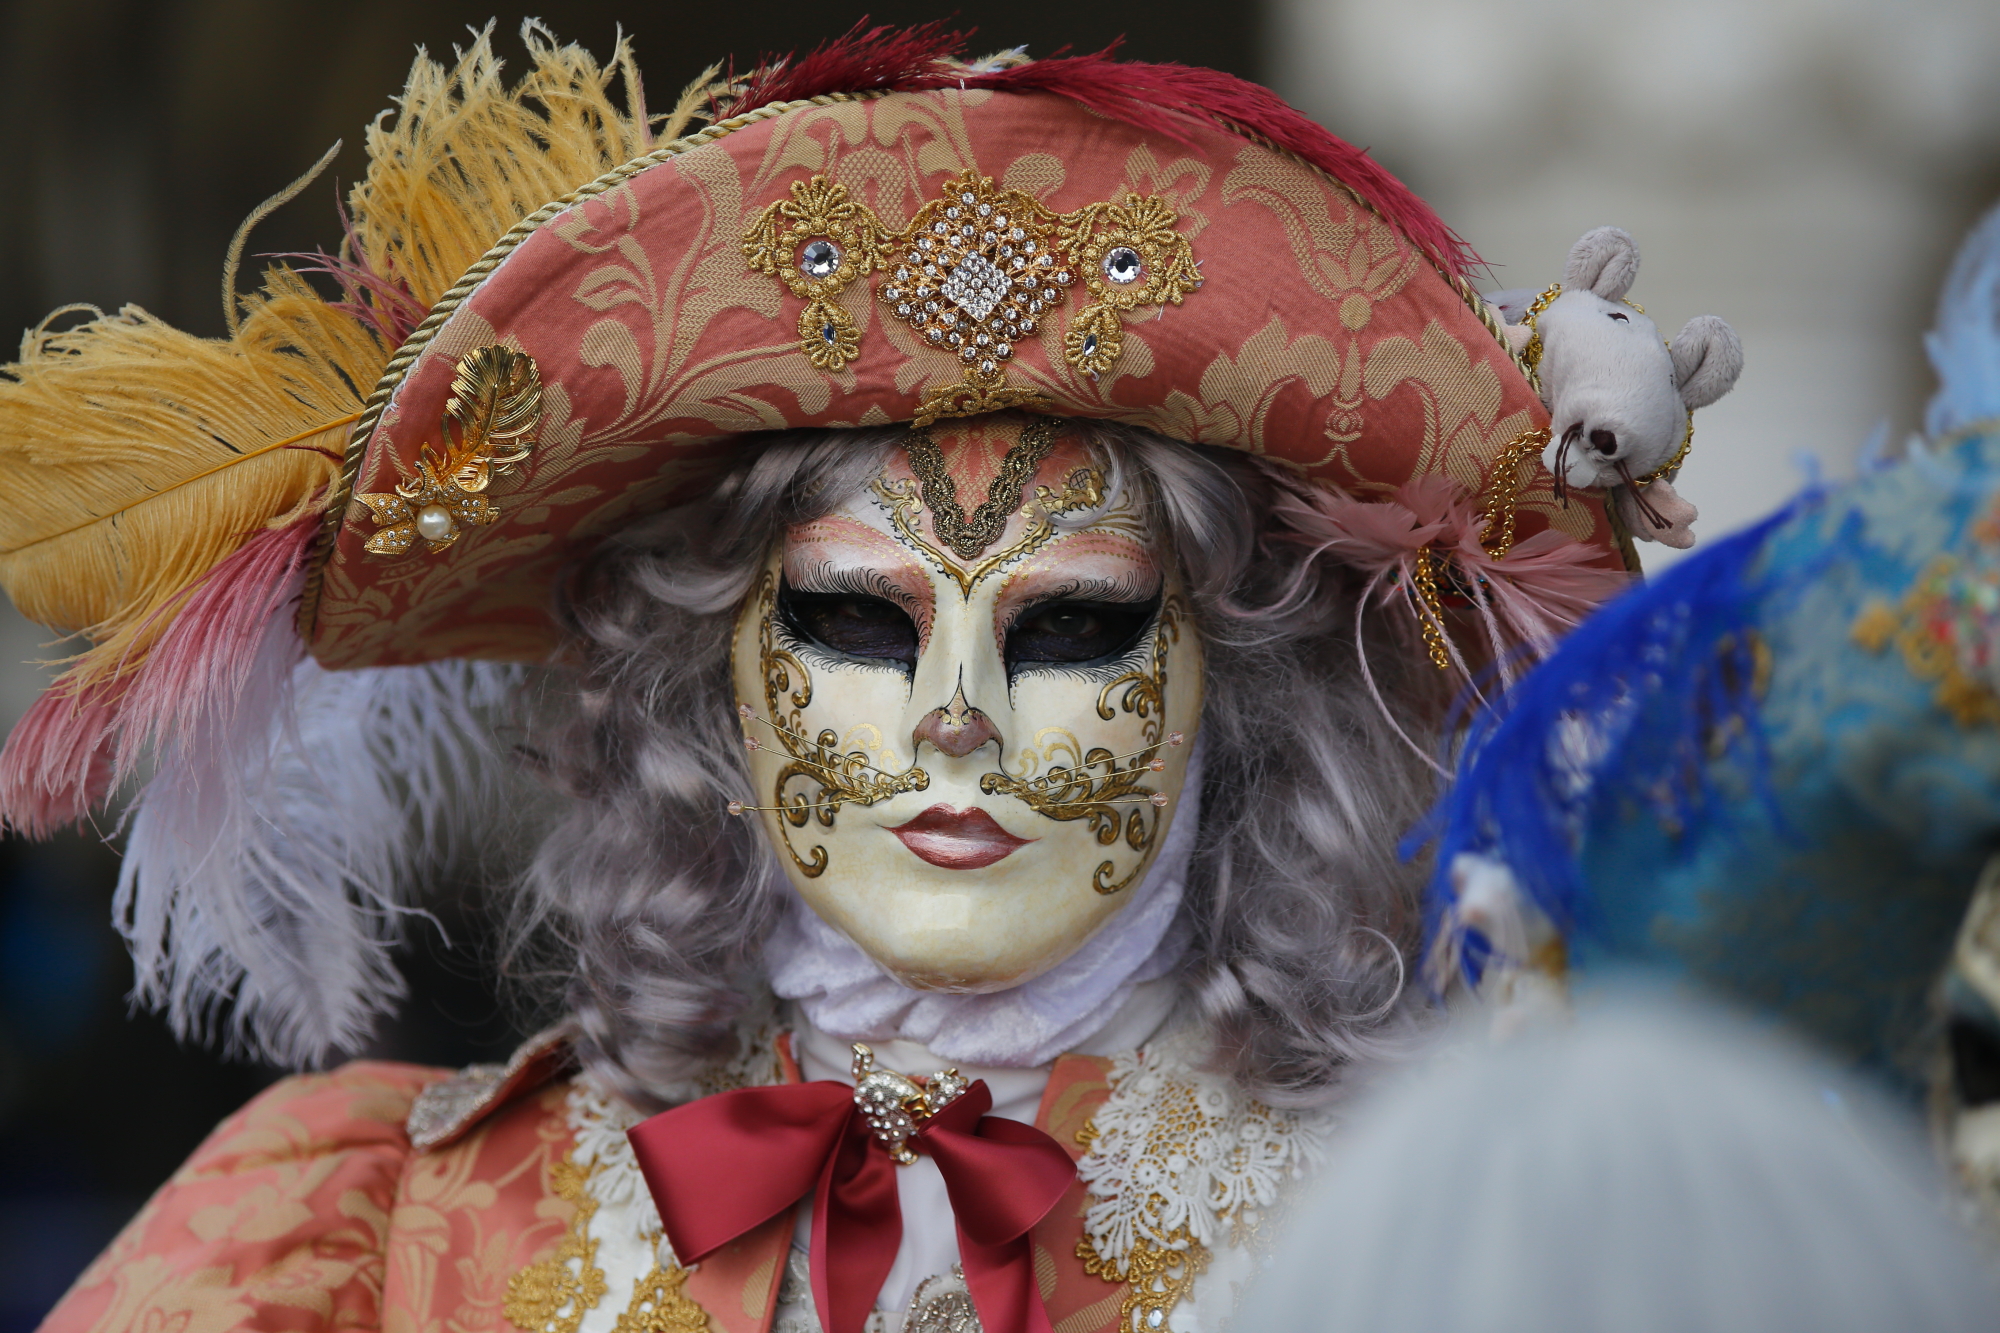 Carnevale di Venezia...